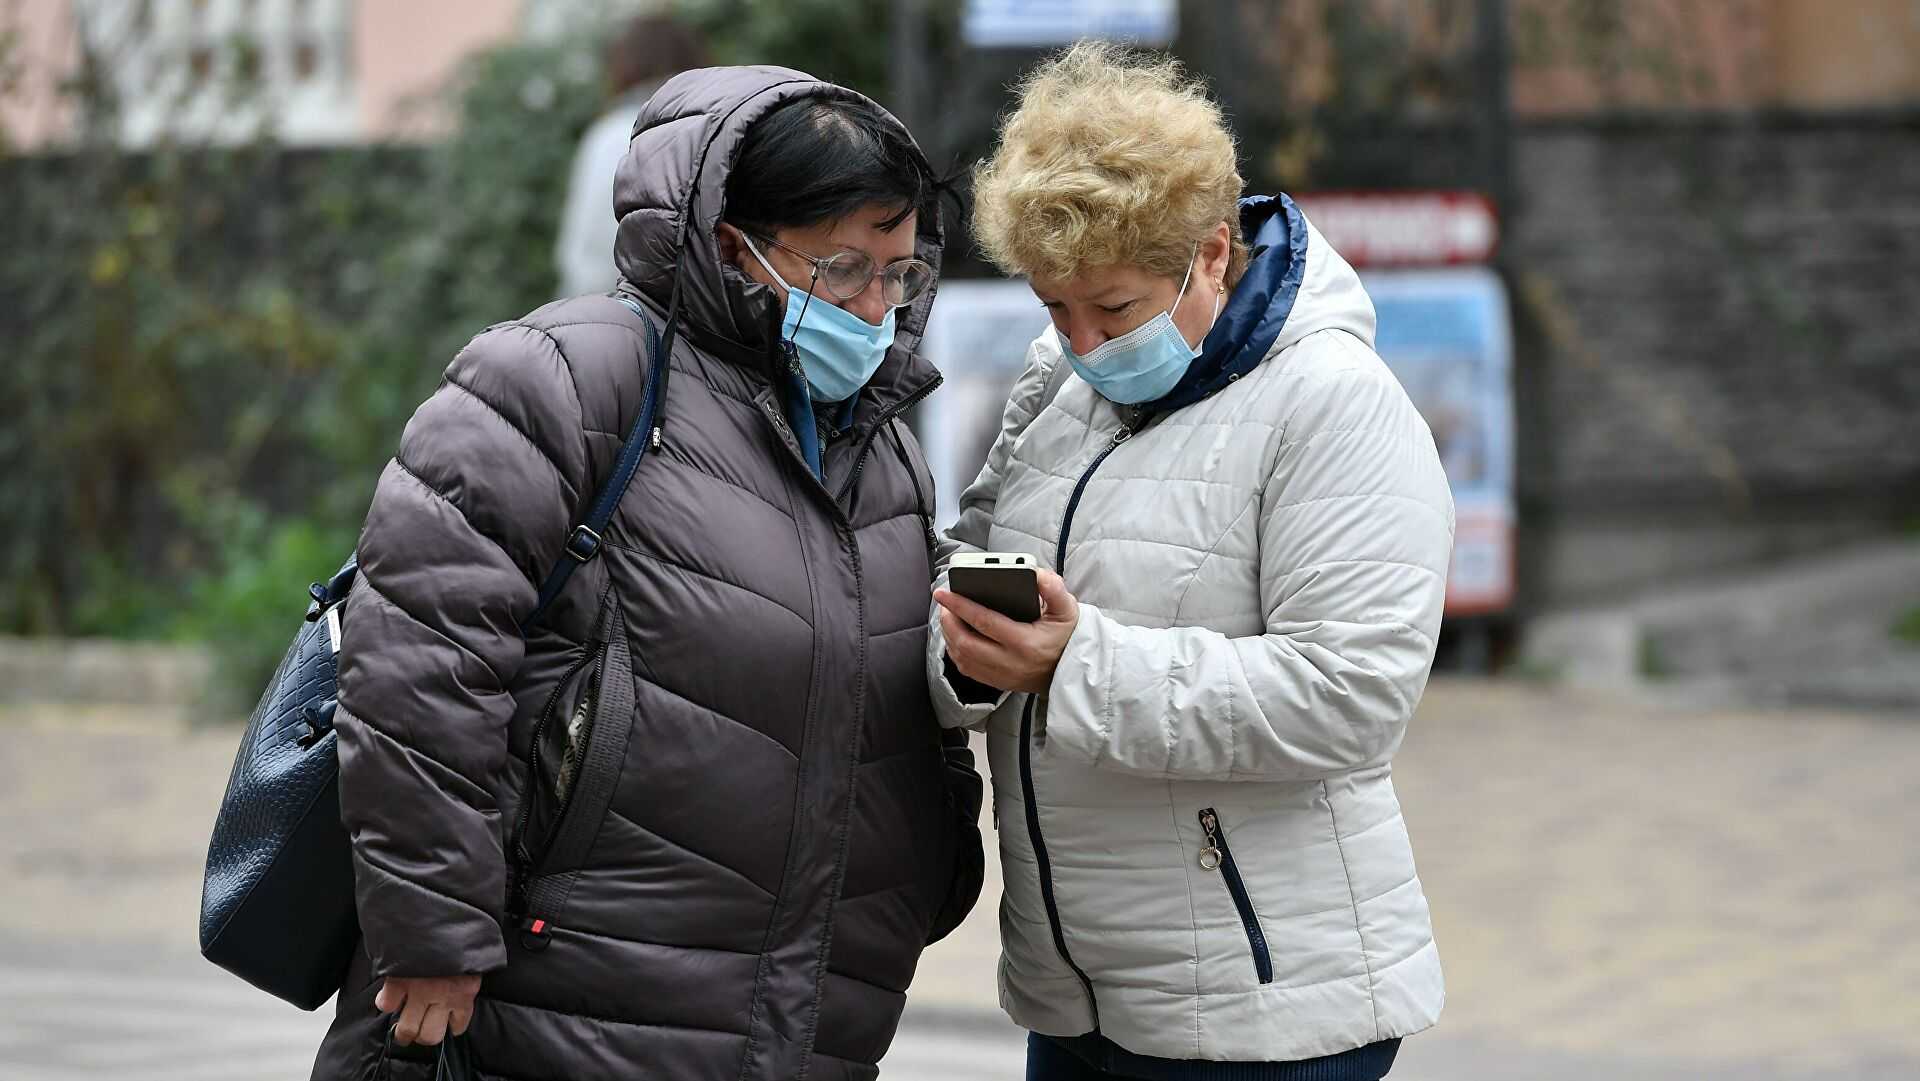 В Крыму количество заболеваний коронавирусом увеличилось вдвое